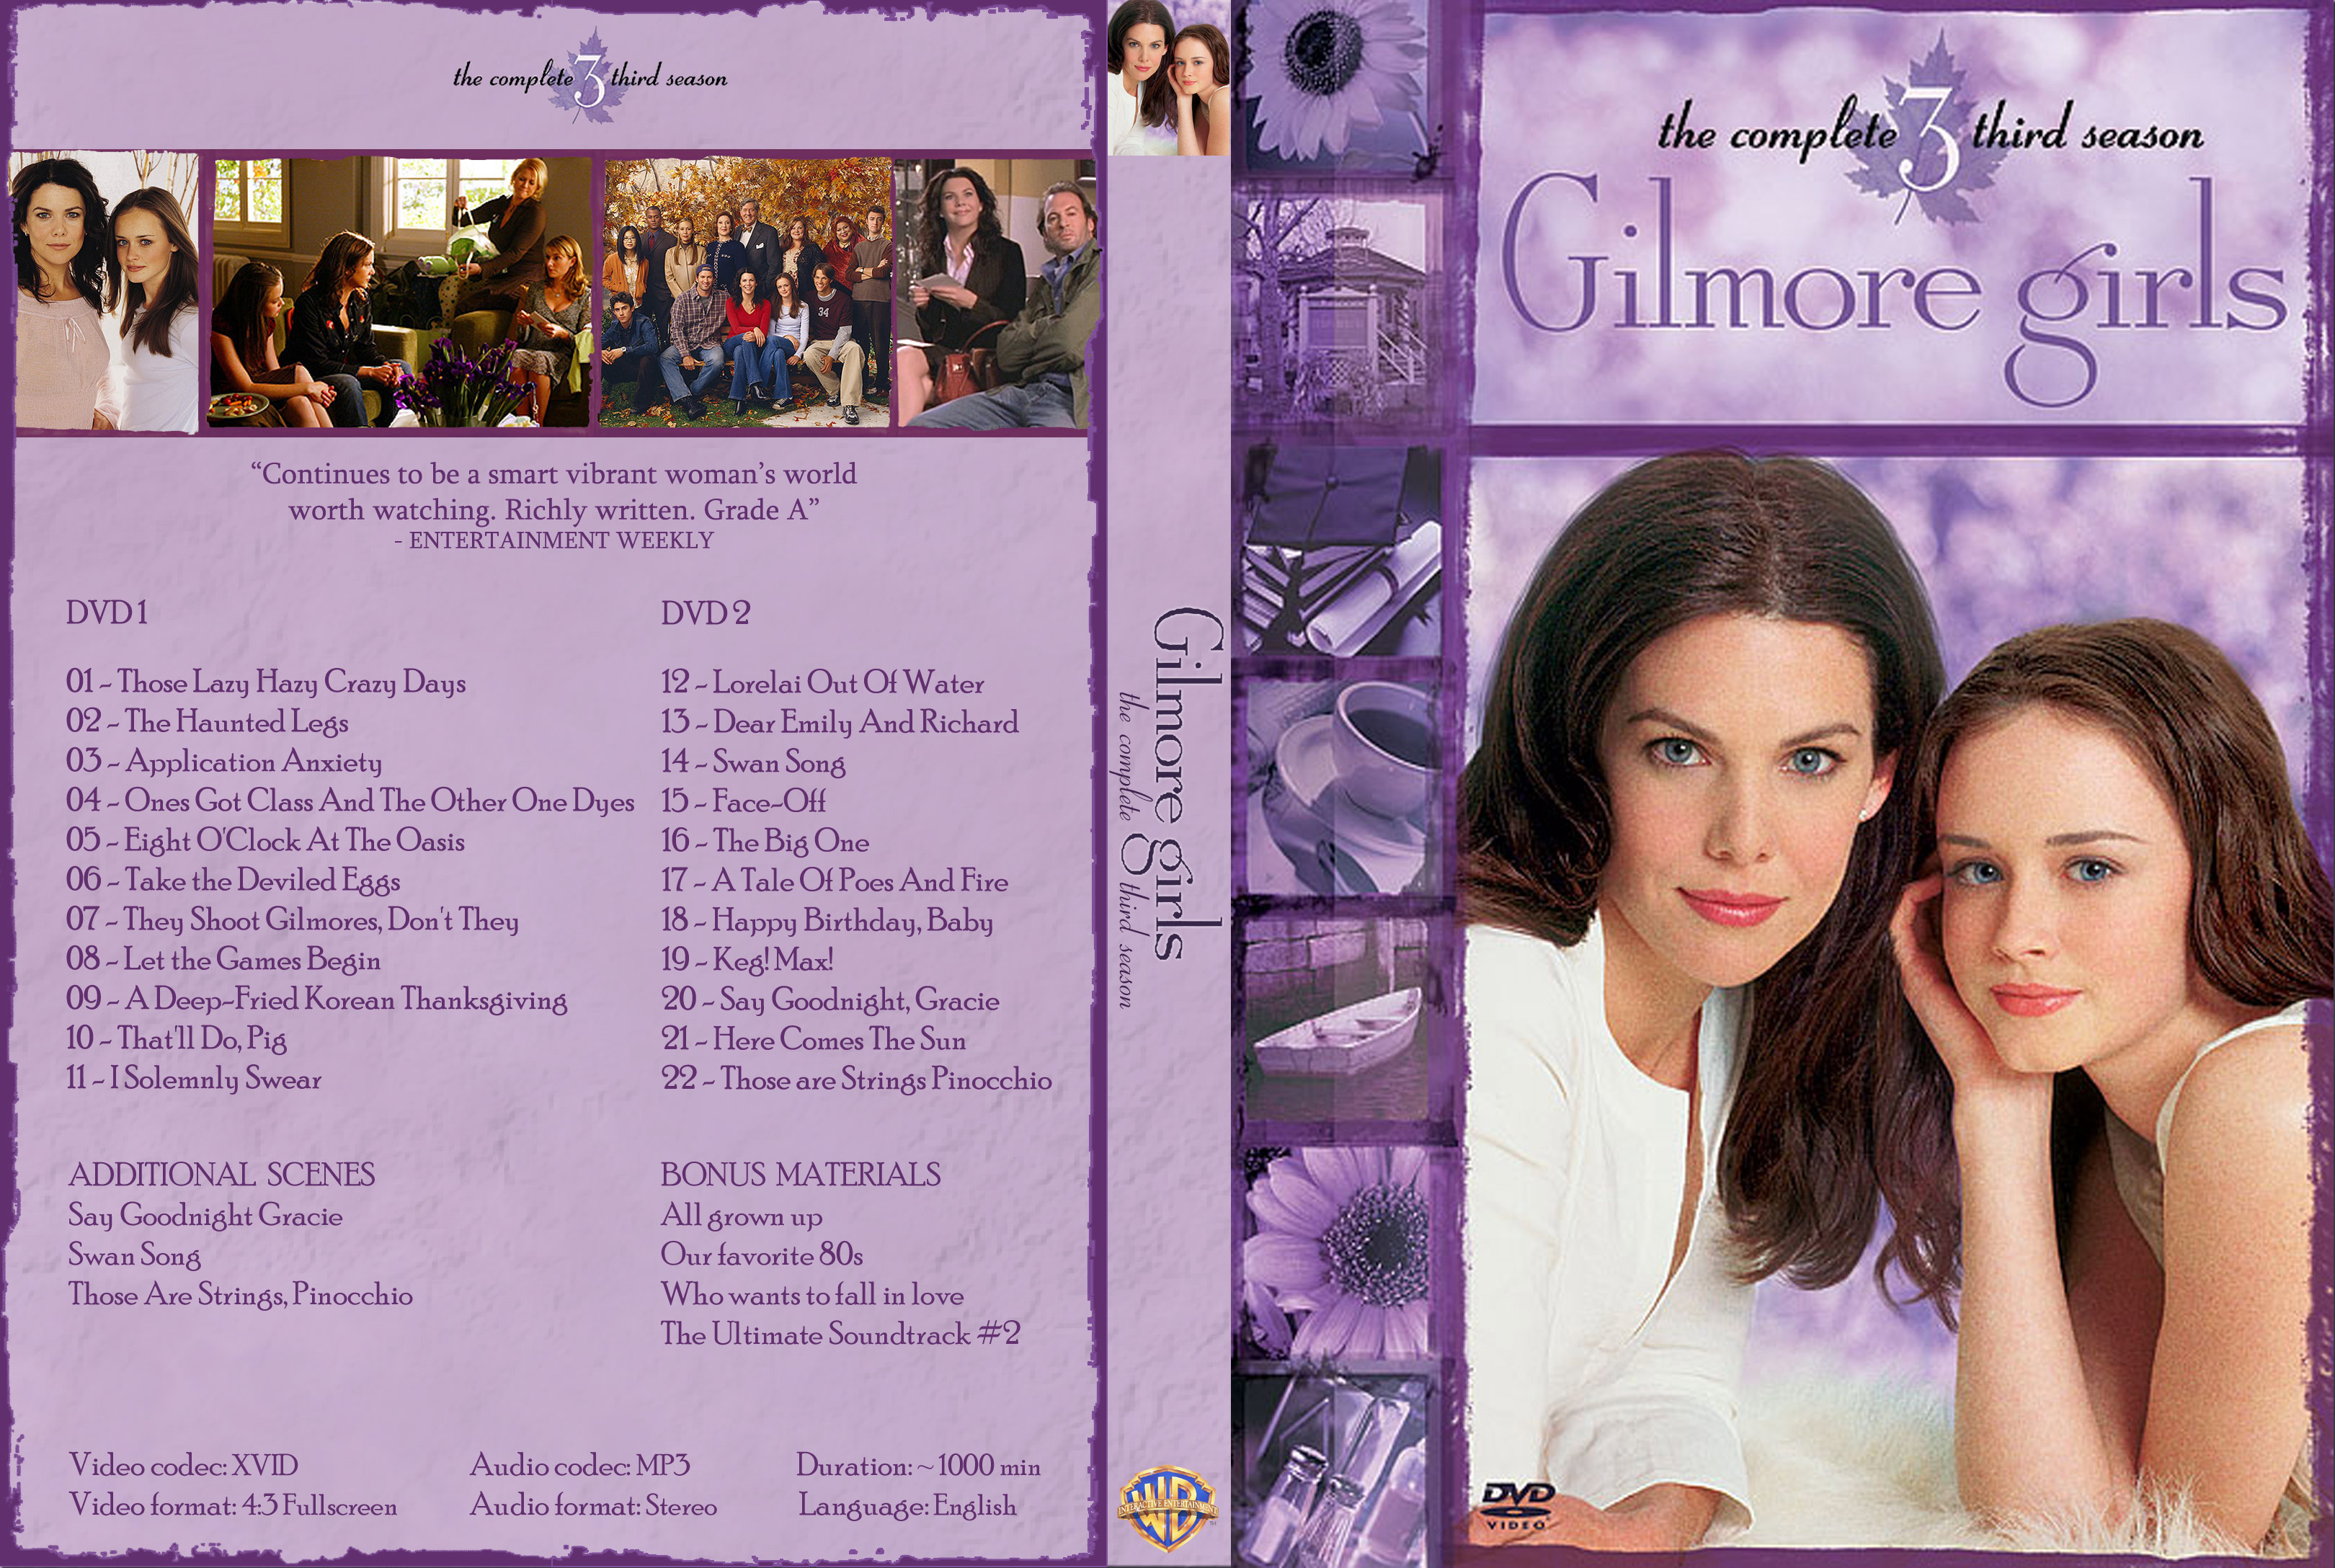 Gilmore Girls (Season 3) / Gilmore Girls (Season 3) (2002)